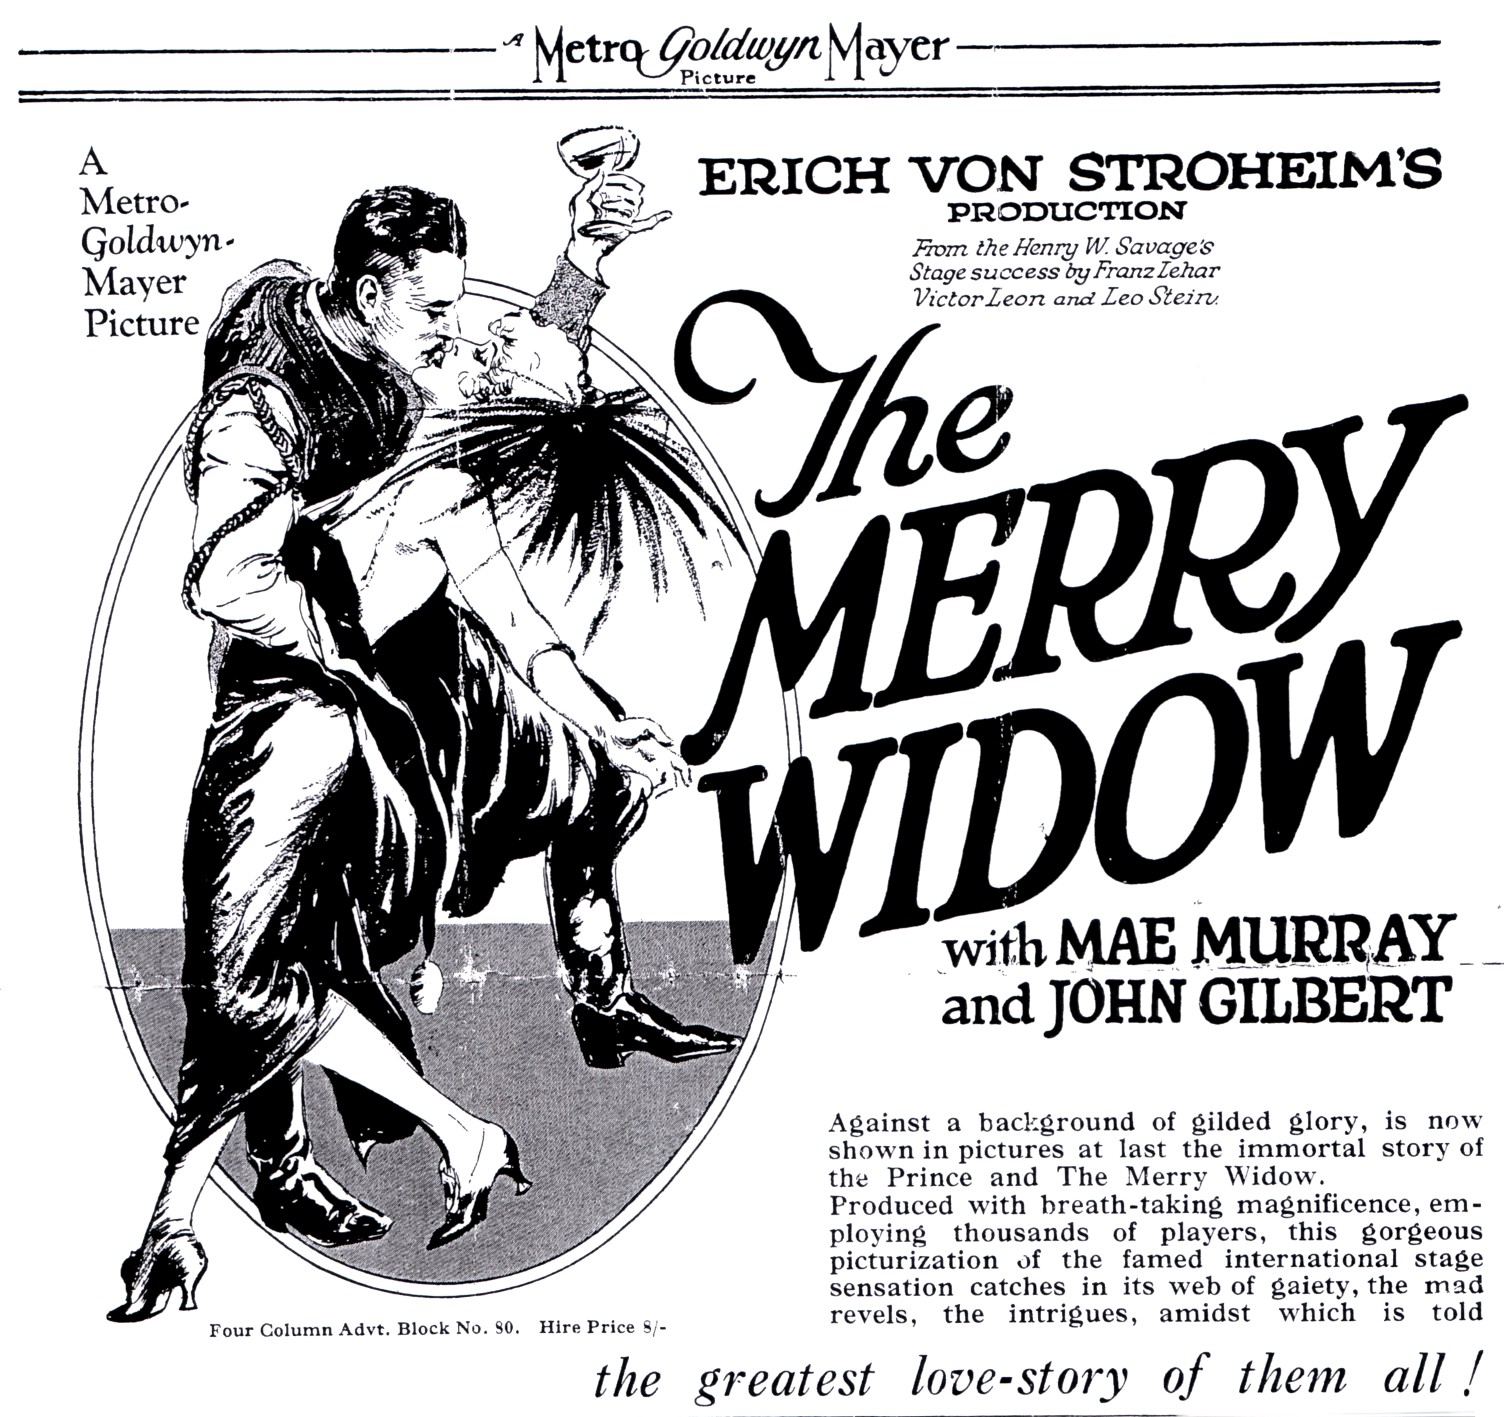 The immensley successful silent movie version from 1925, directed by Erich von Stroheim.